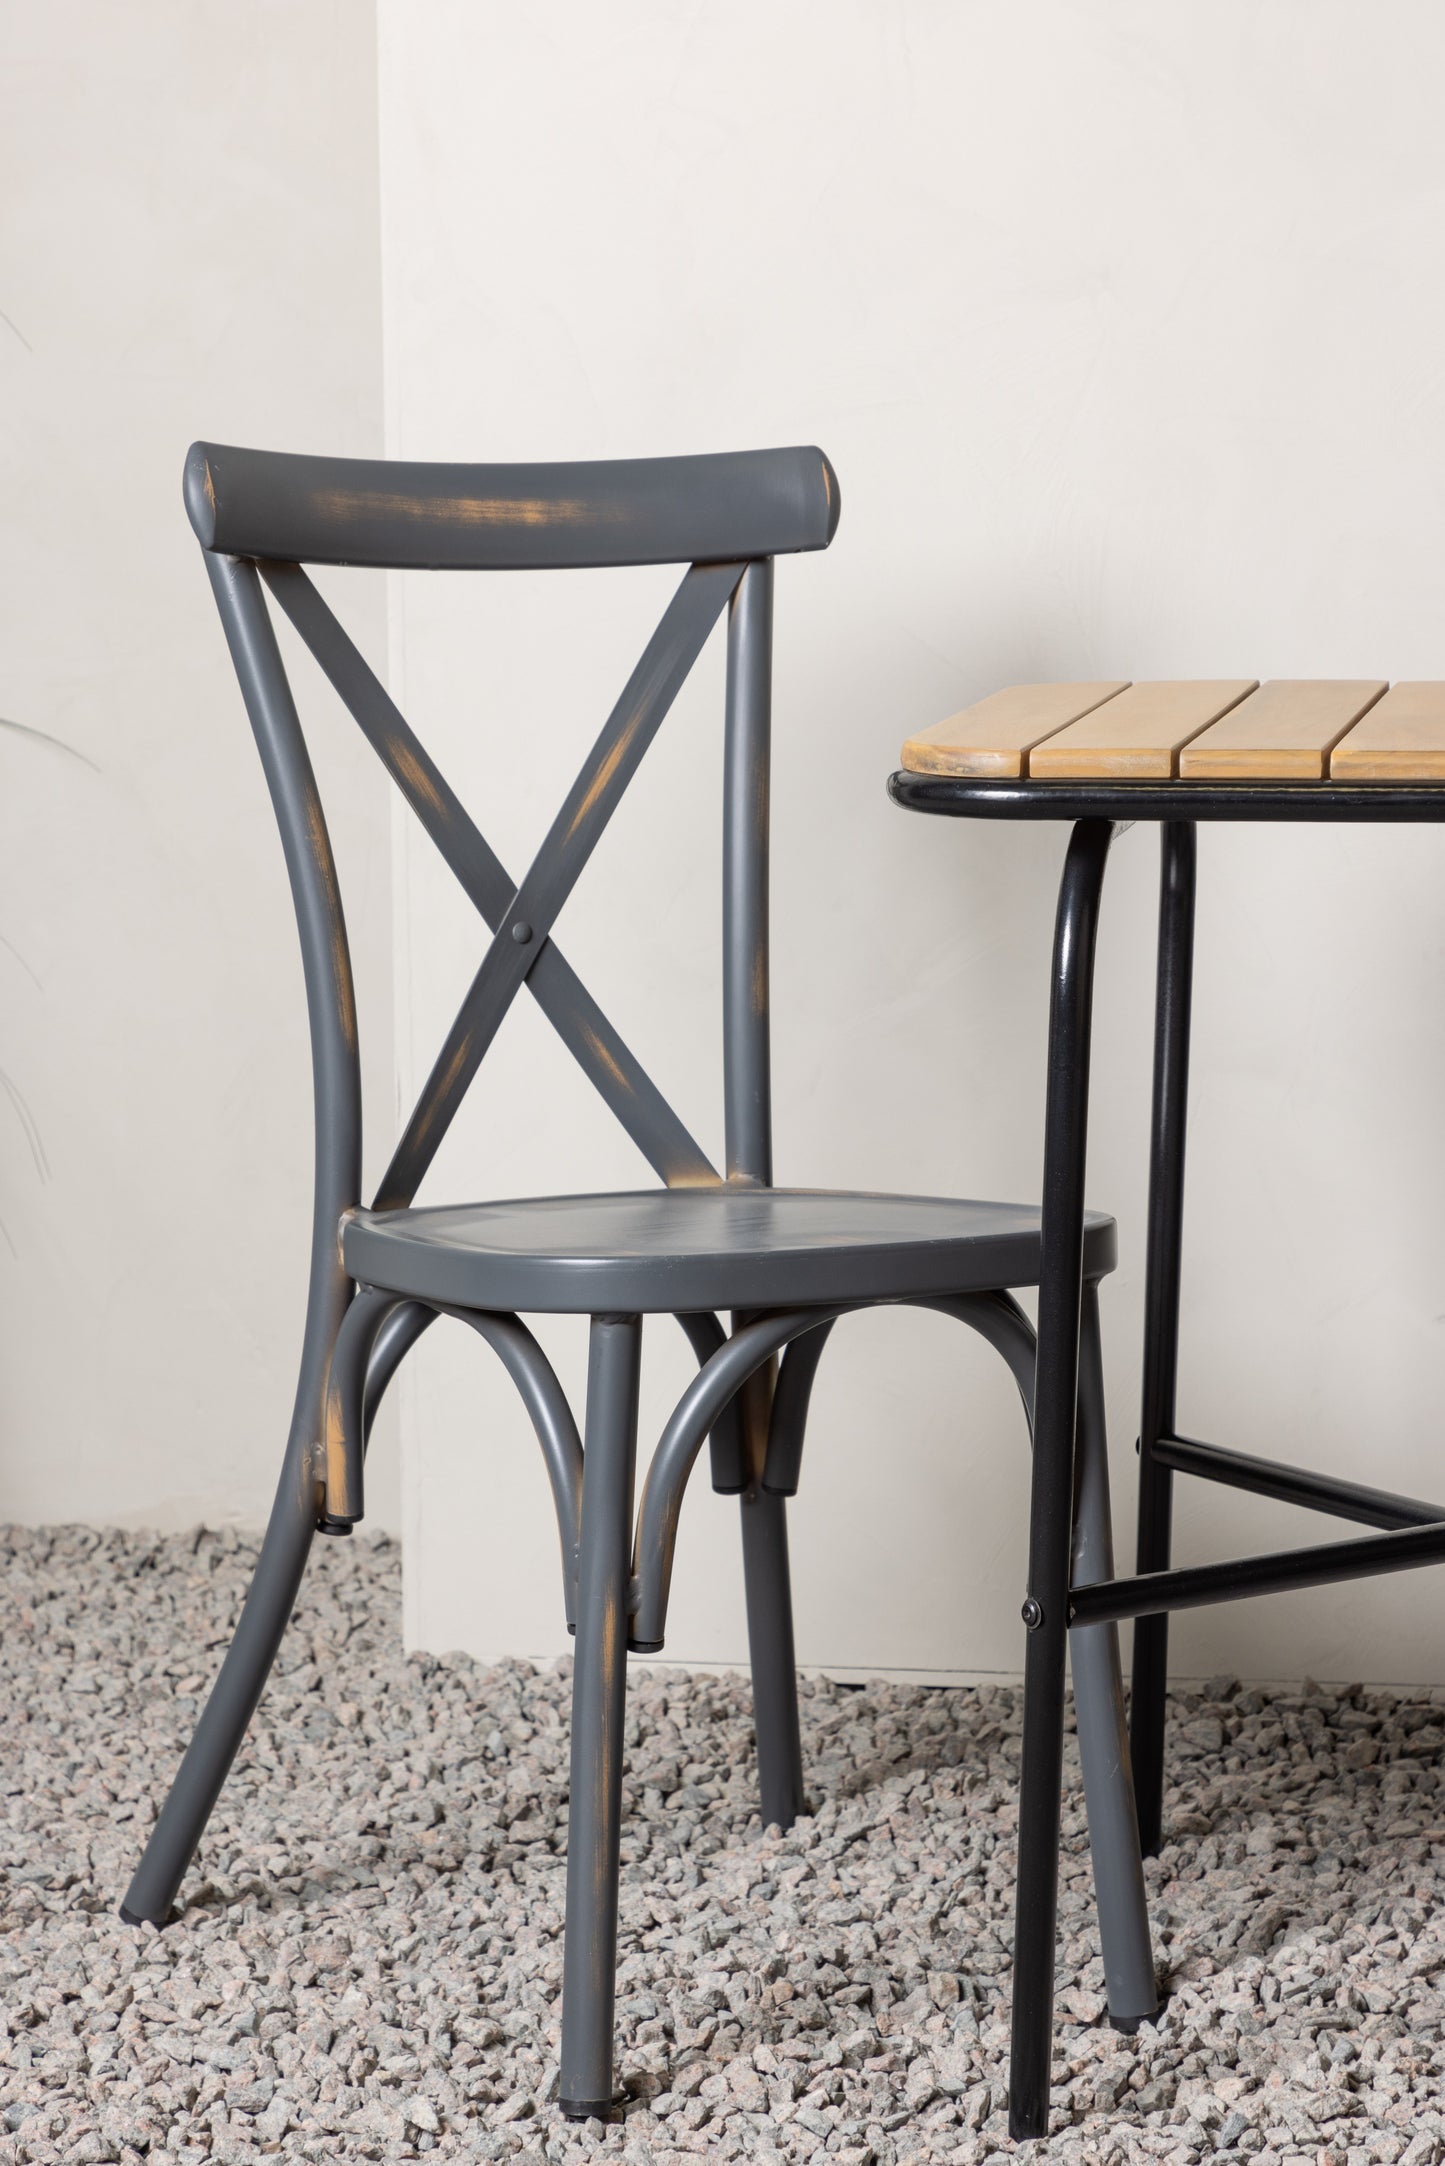 Holmbeck - Cafébord, Stål - Sort / Rektangulær 55*70*74 + Tablas stol Aluminium - Sort